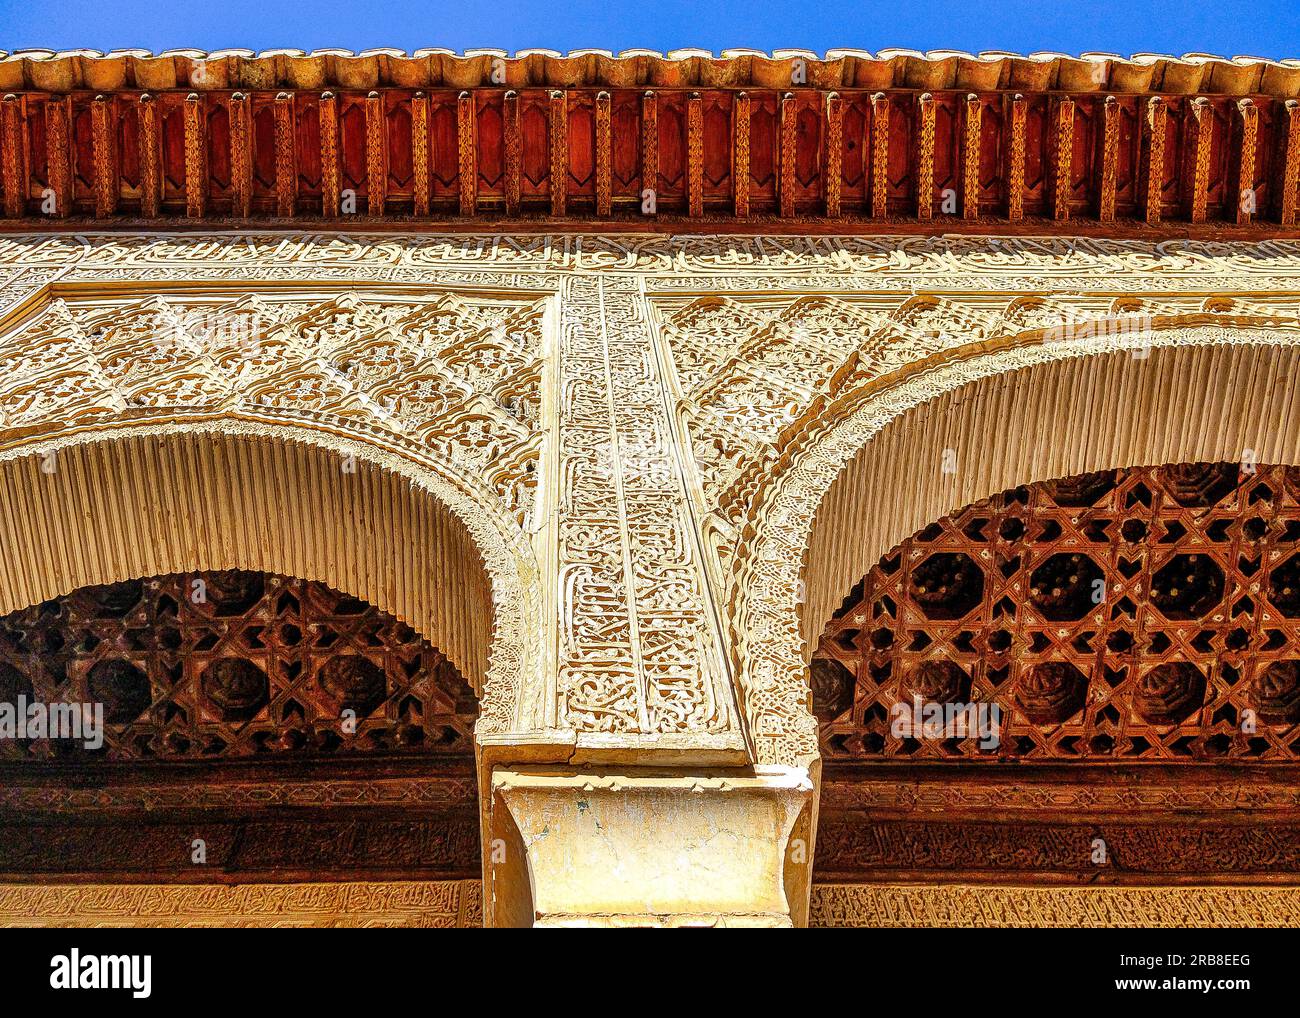 Architettura islamica nel complesso del castello e forte dell'Alhambra a Granada, Spagna Foto Stock